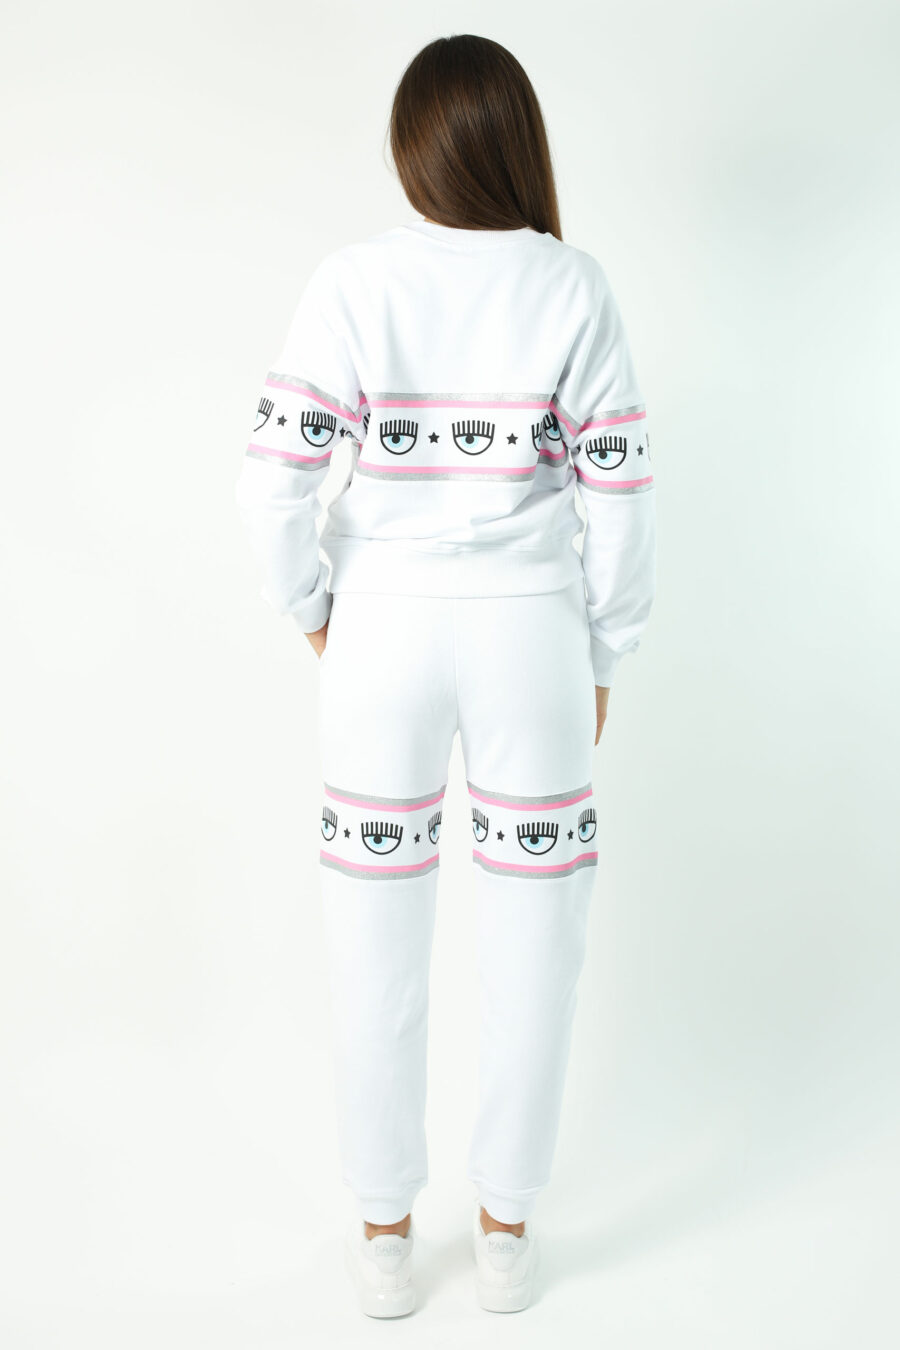 Weißes Sweatshirt mit Augenlogo auf Band - Fotos 2671